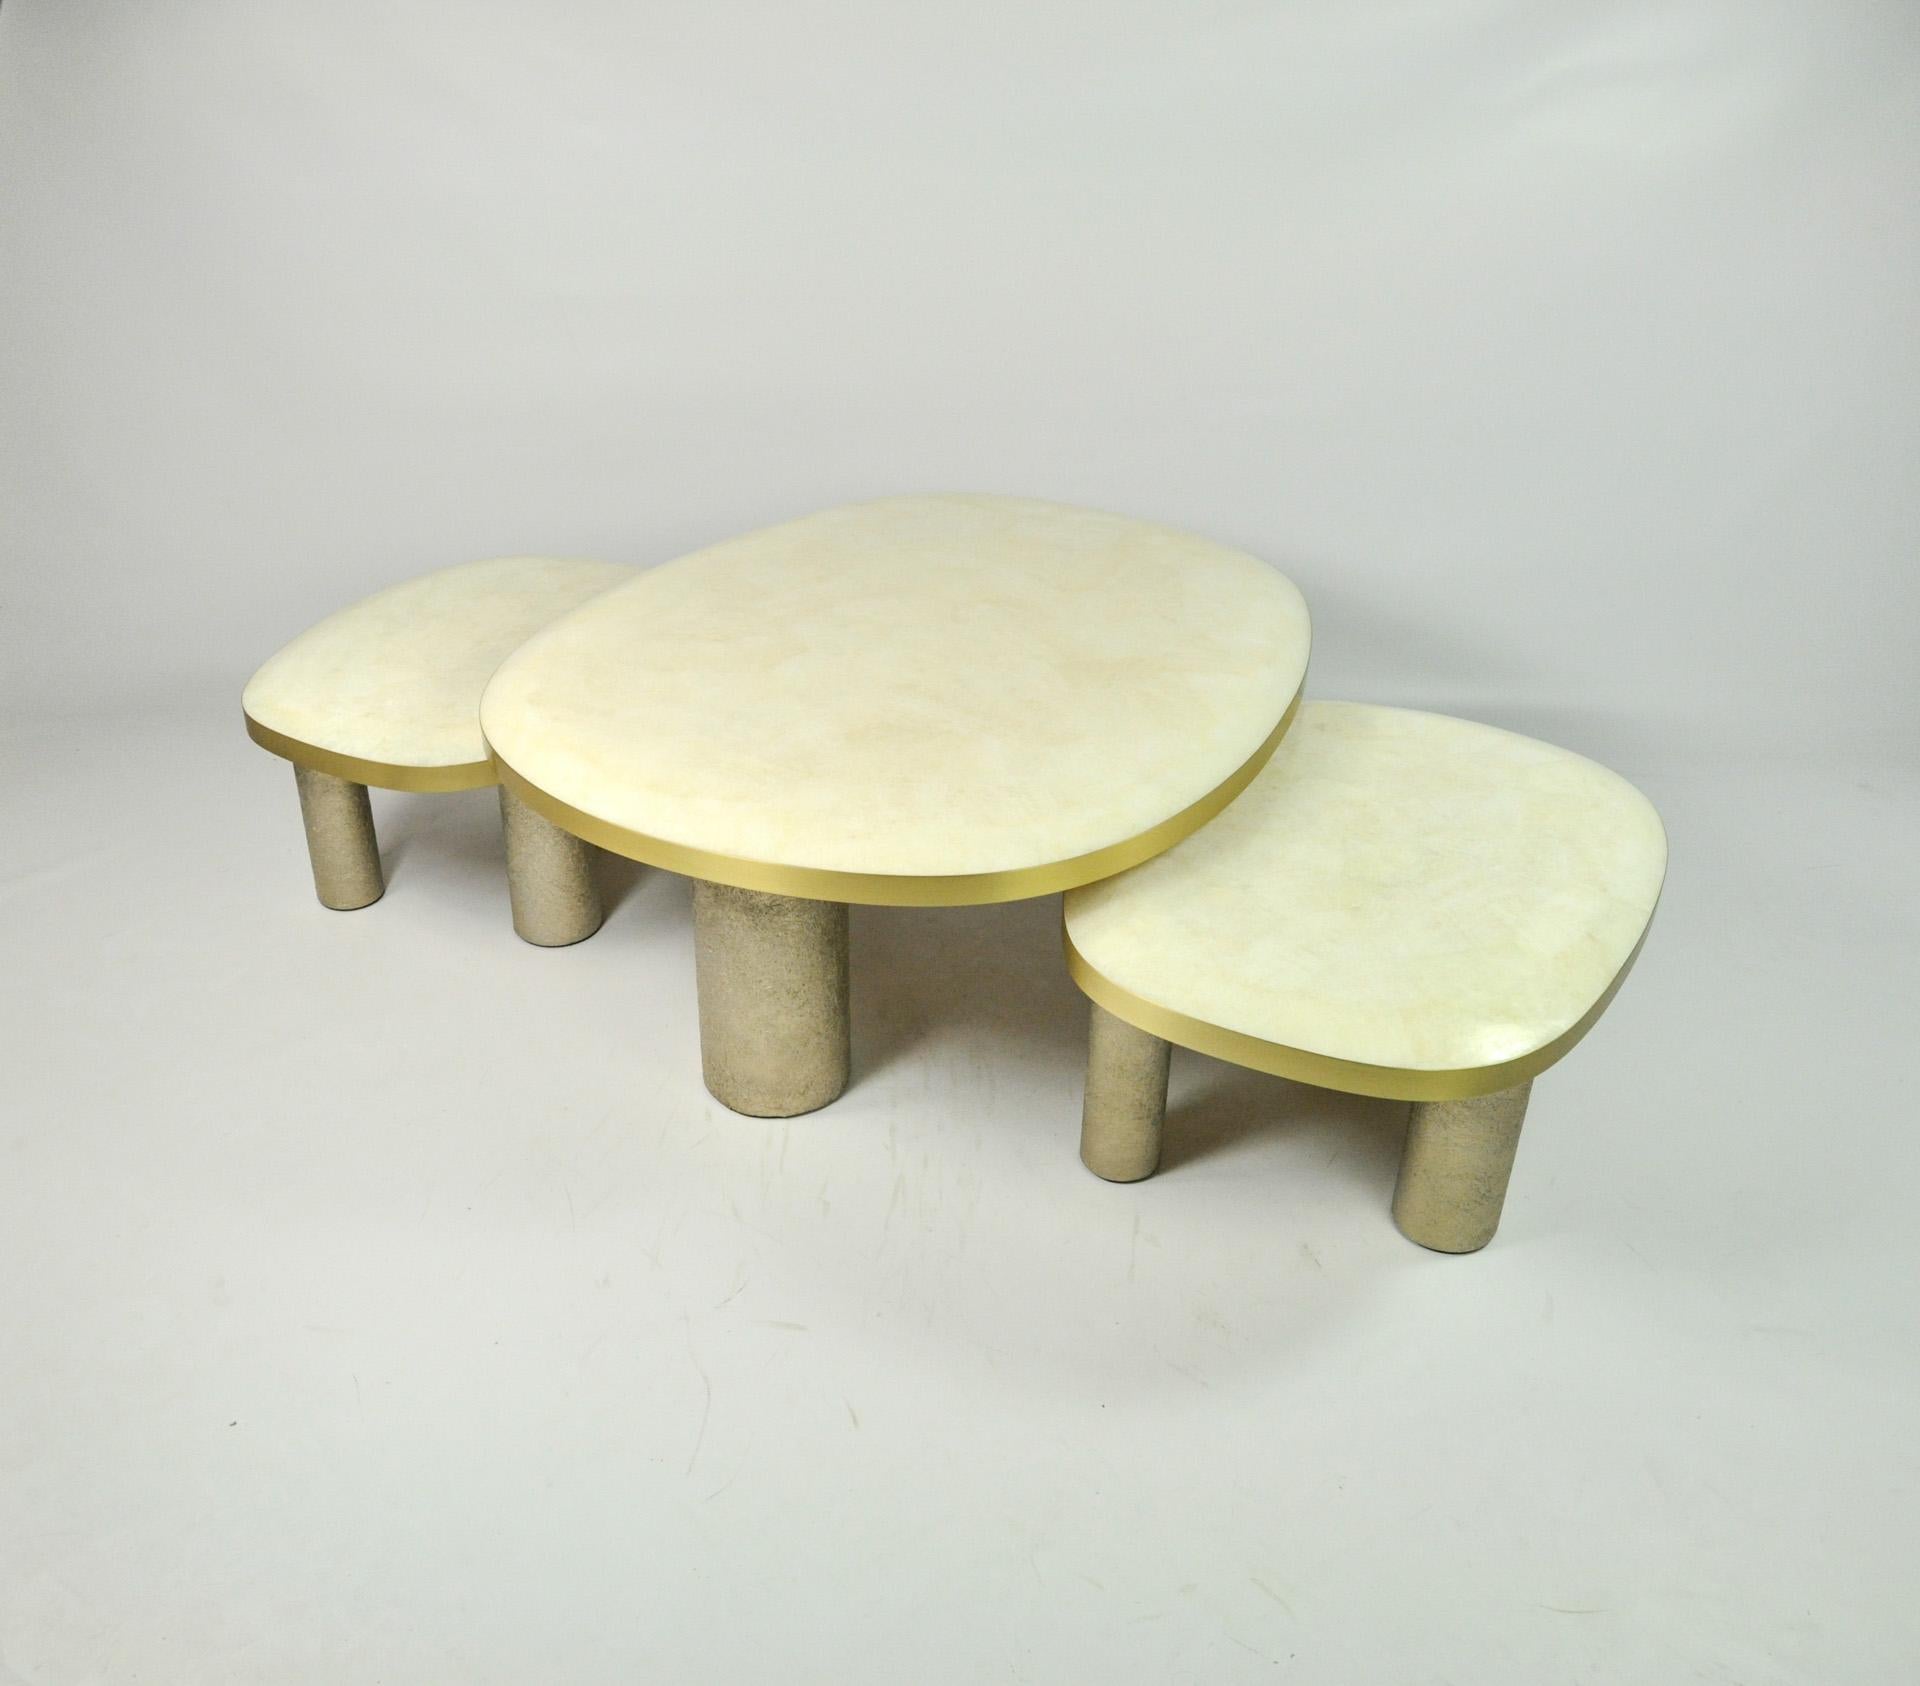 Le set de 3 tables basses Ovoid est composé d'un plateau en marqueterie de cristal de roche blanc.
Les bords du plateau sont en laiton brossé.
Chaque table a trois pieds cylindriques en fibre de verre semi-brut avec une patine dorée.

Le dessus des